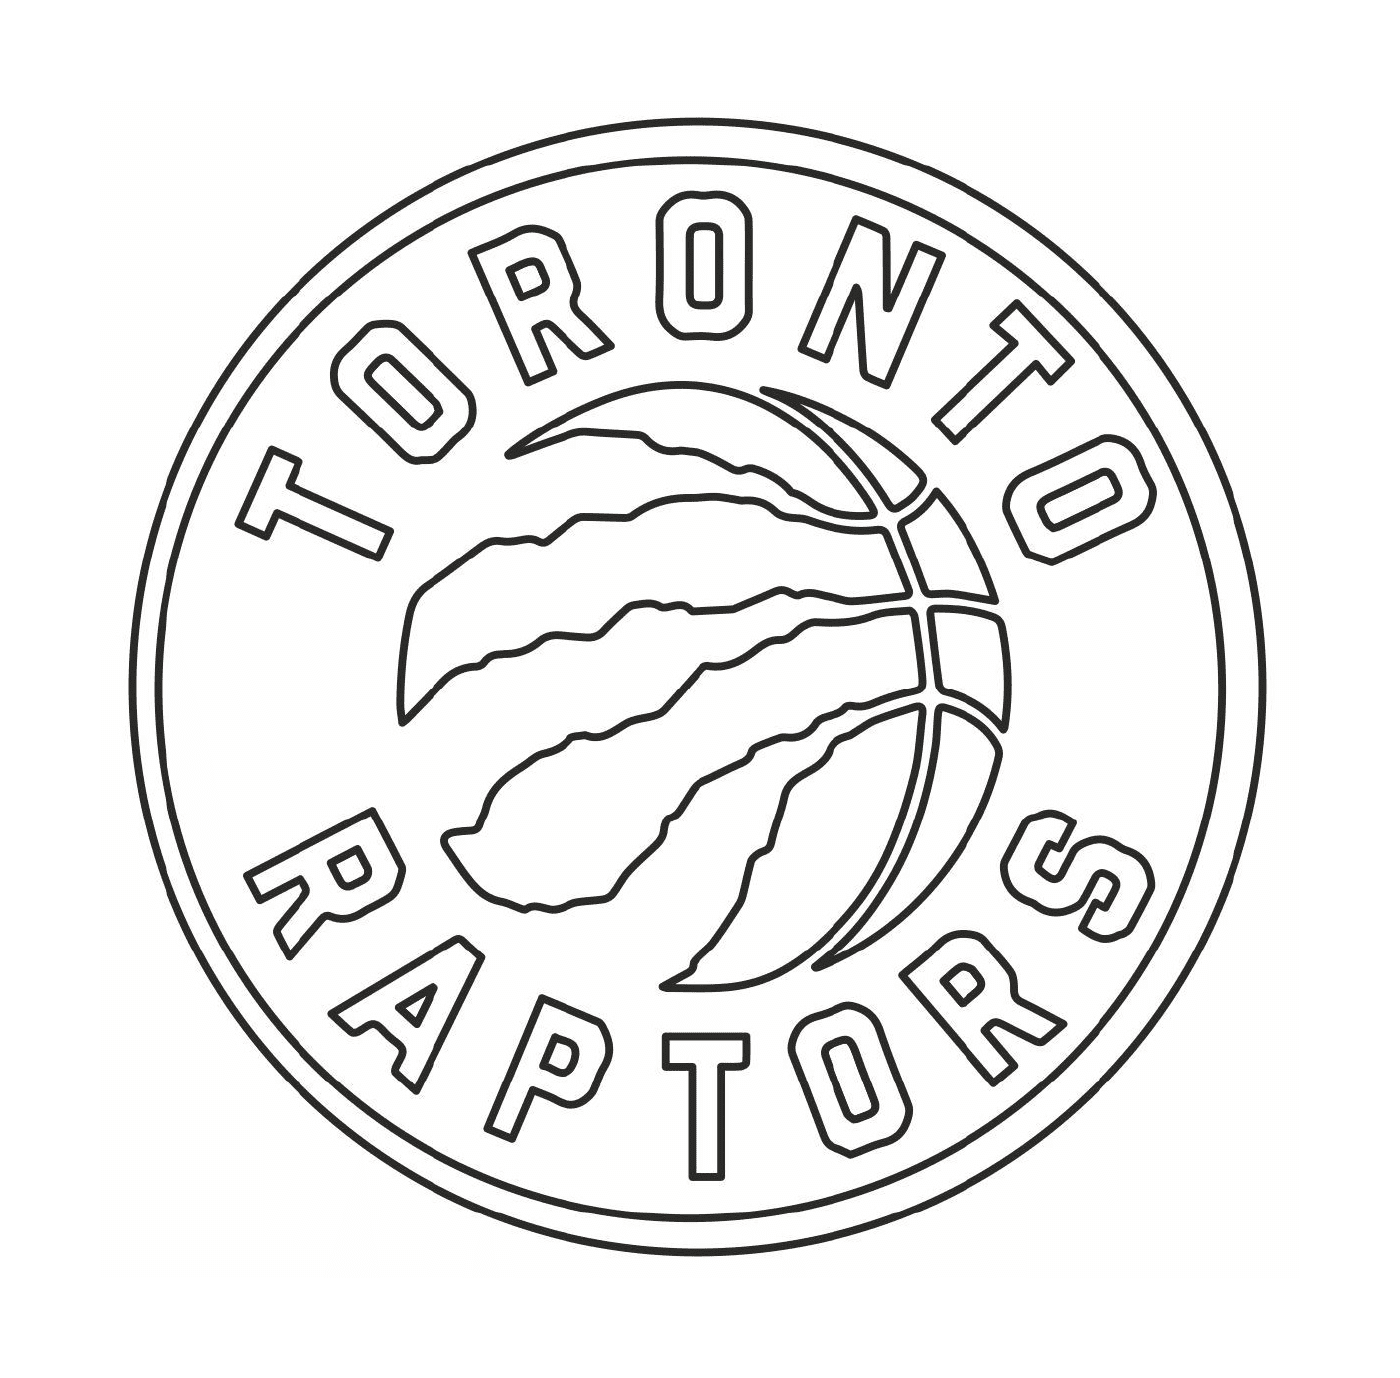  El logotipo de Toronto Raptors, equipo de baloncesto 